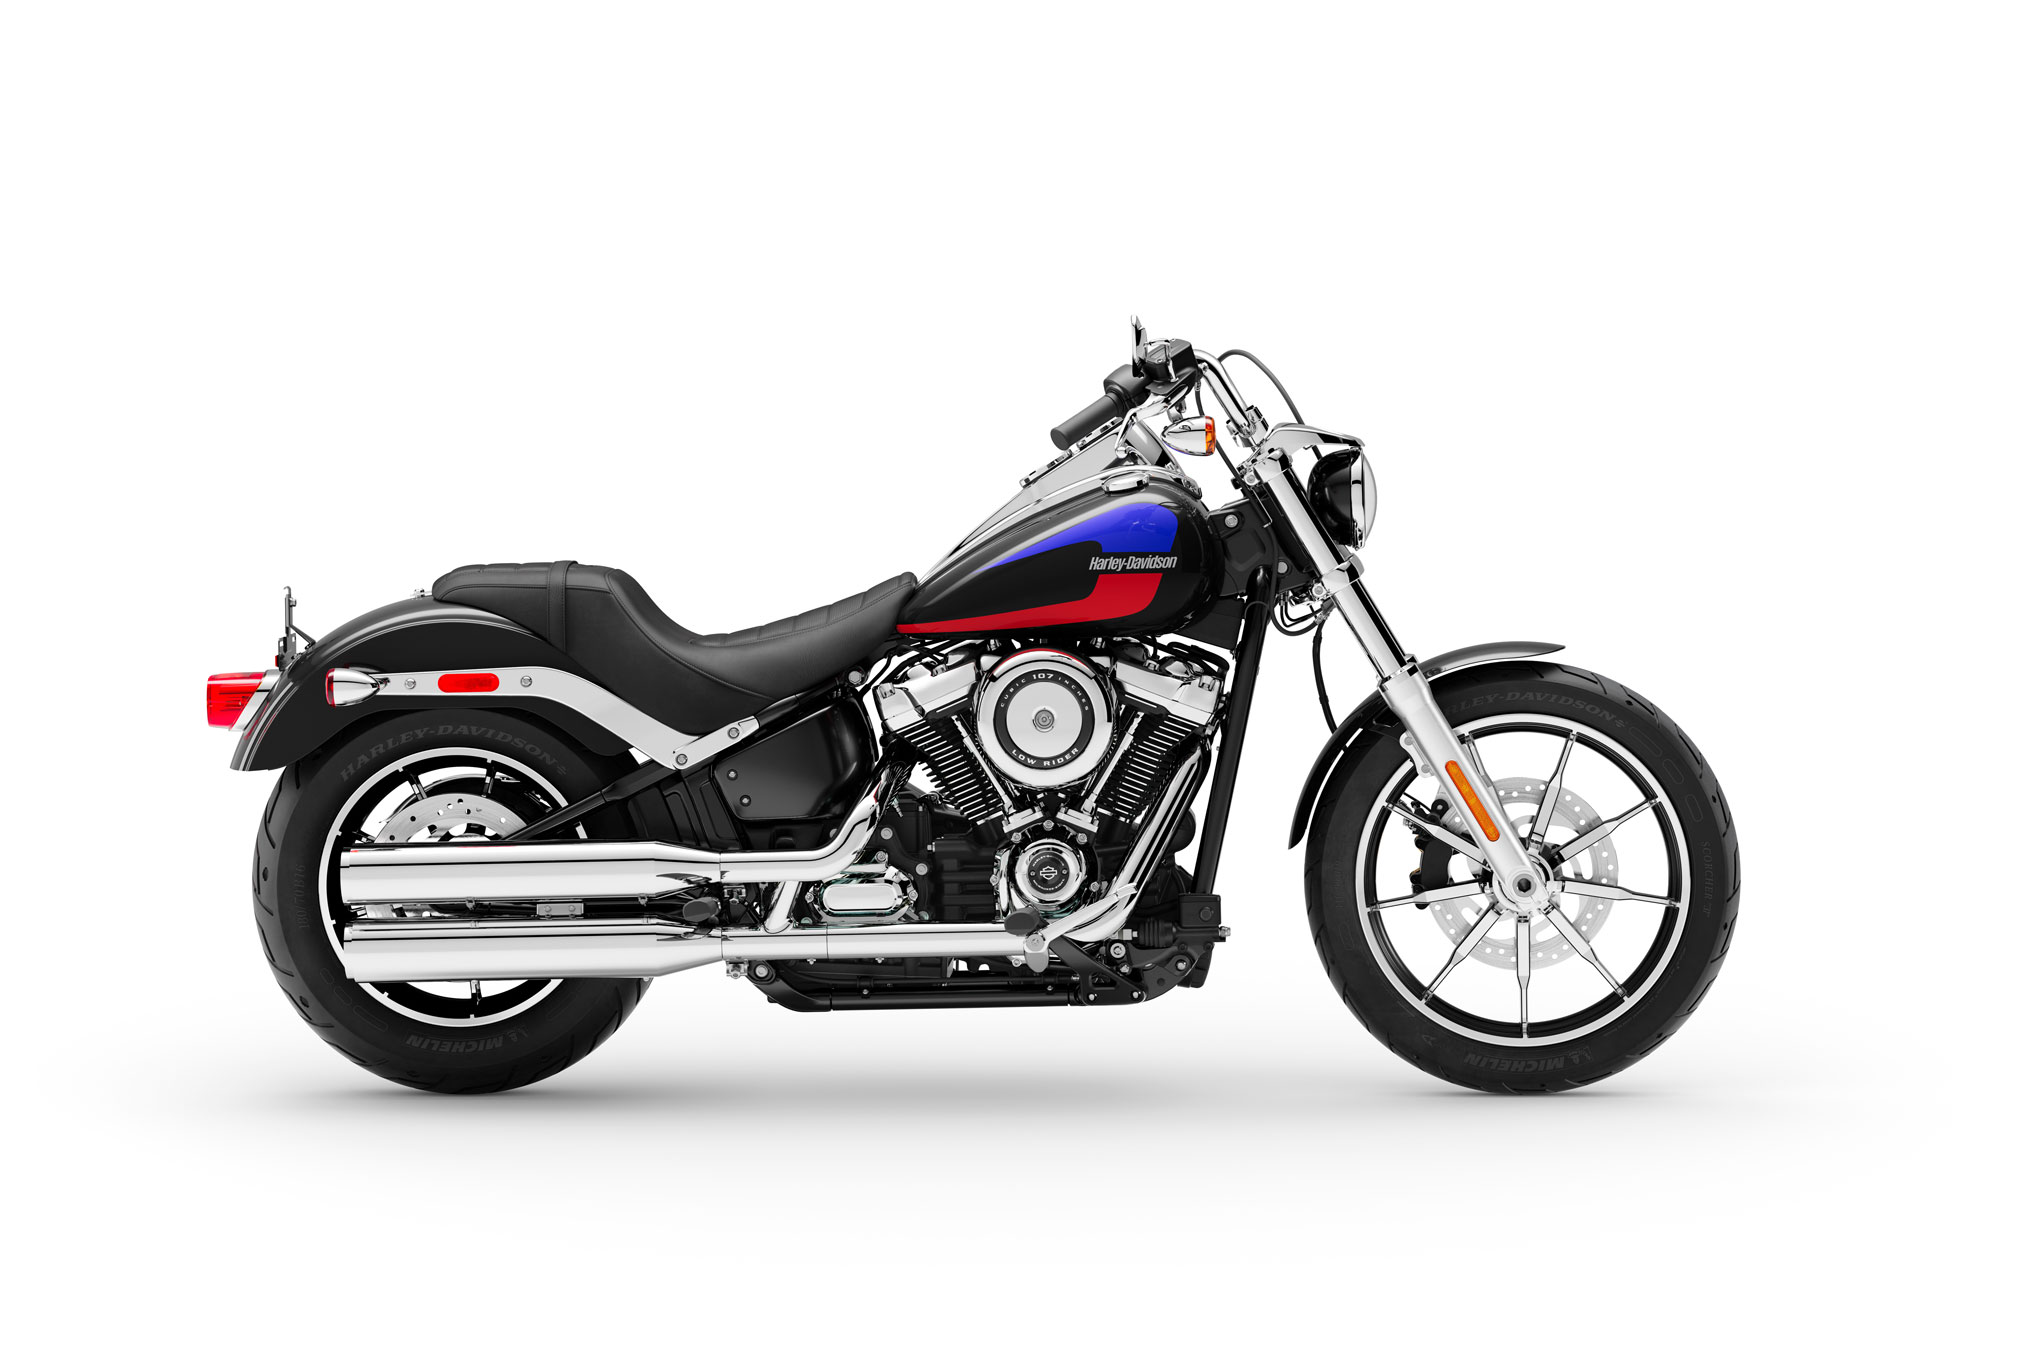 Konsep Baru Harley Davidson 2019 Low Rider